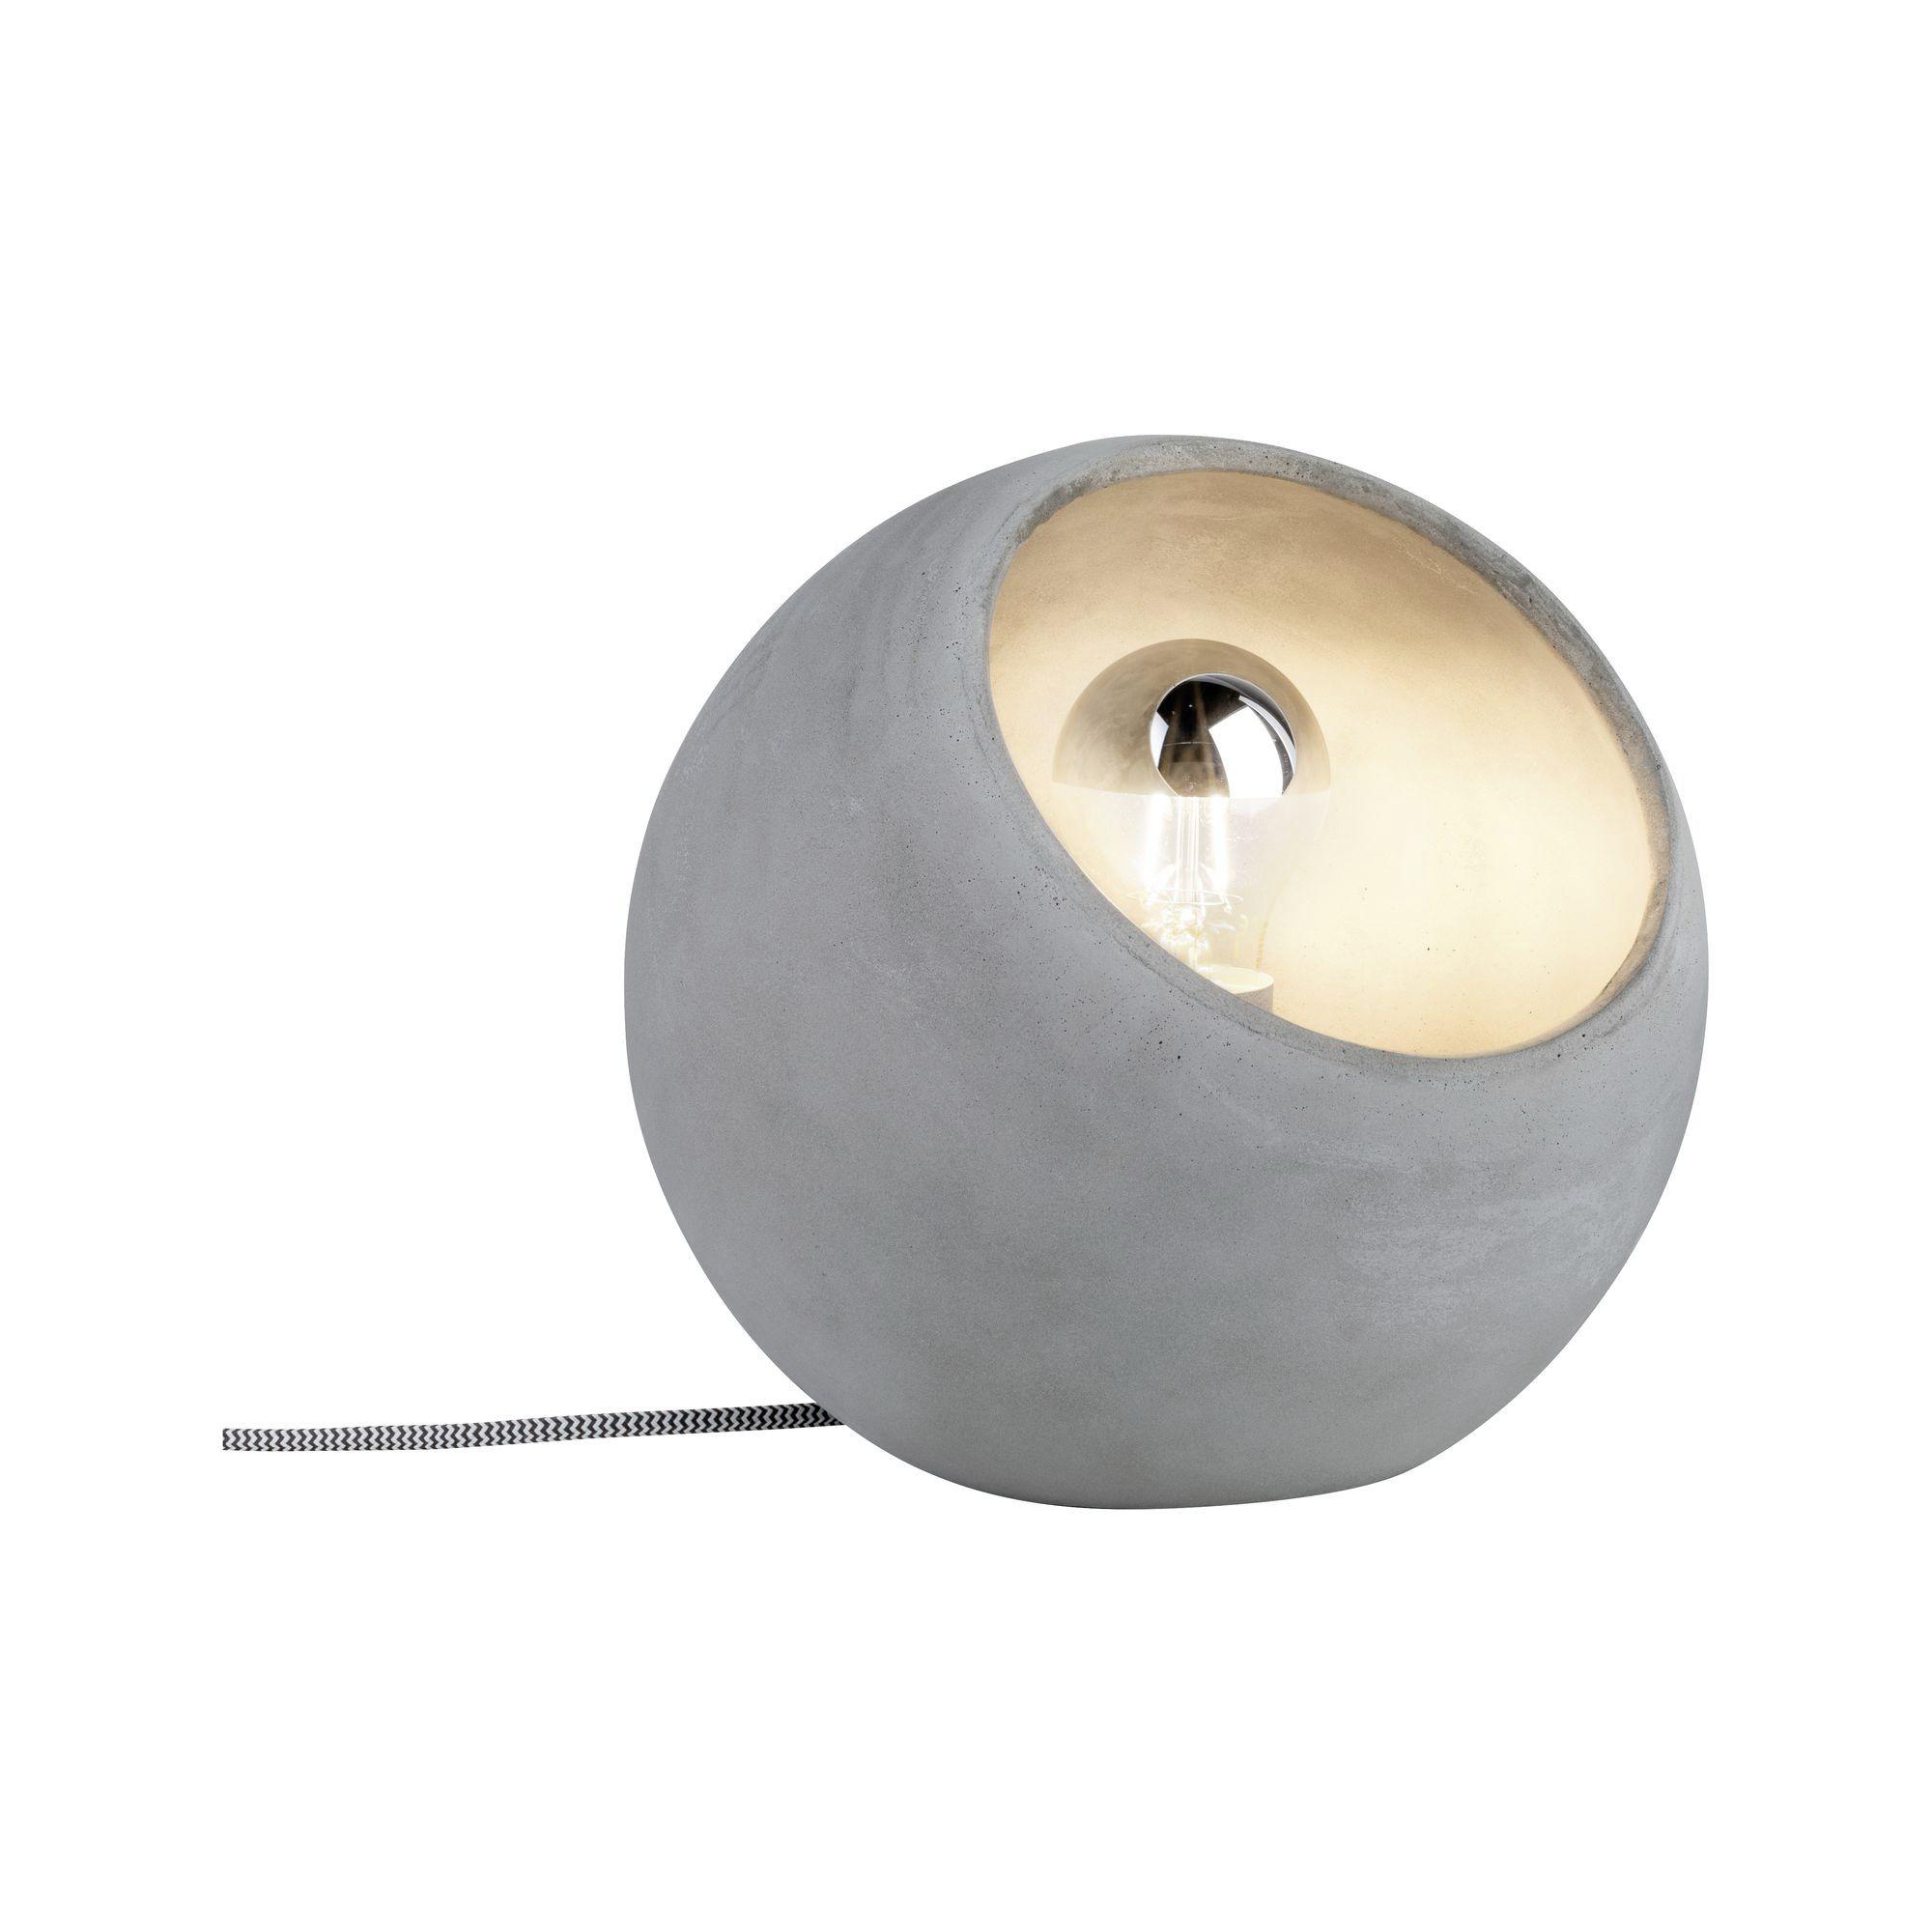 TISCHLEUCHTE max. 20 Watt "Ingram" - Grau, Design, Stein (23cm) - Paulmann